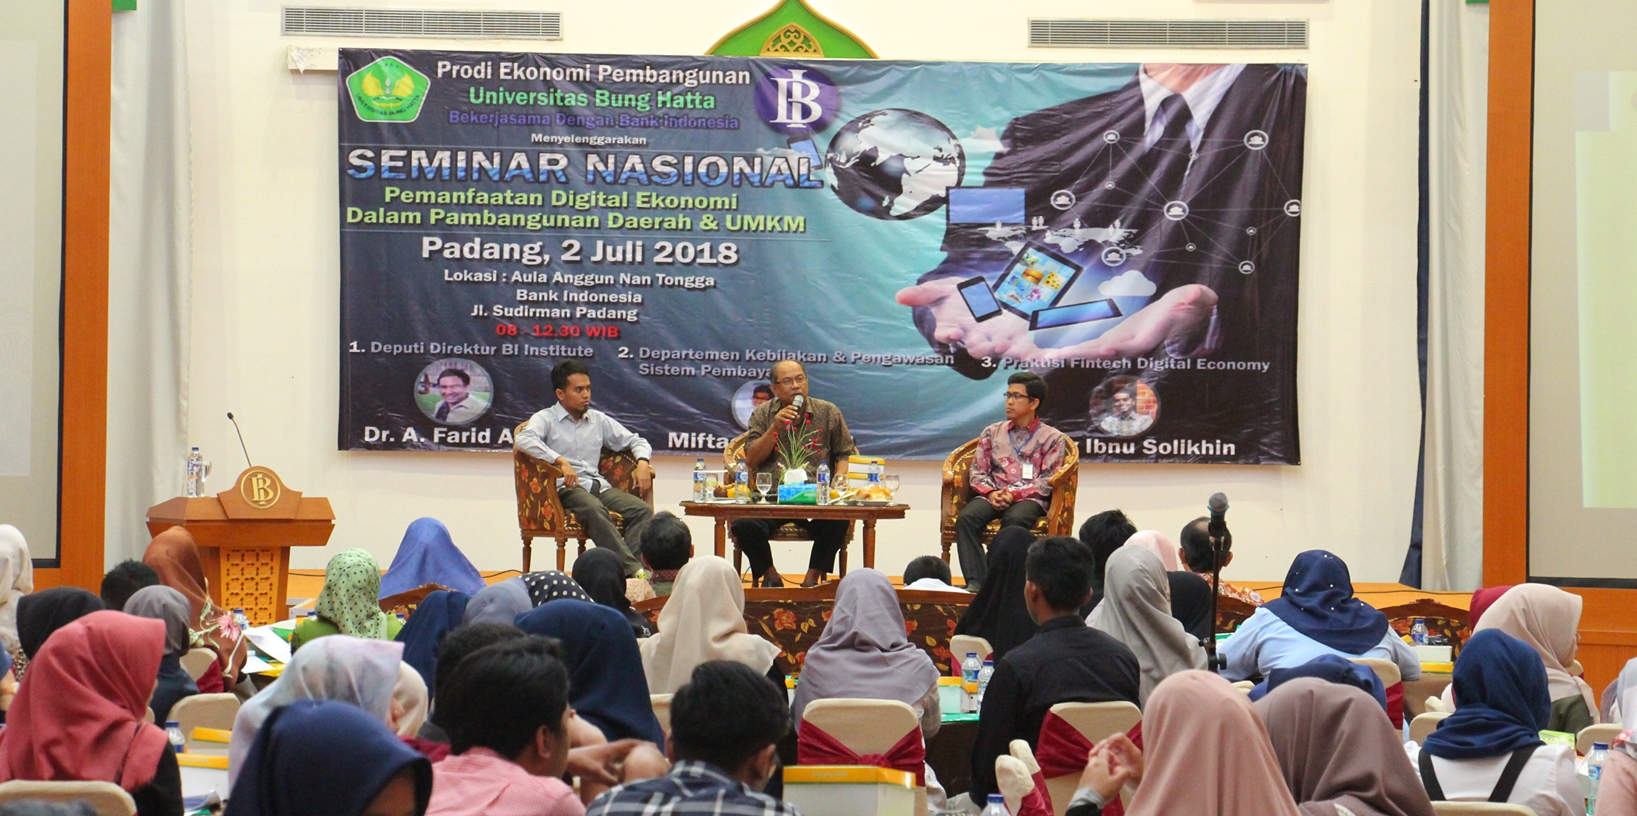 Ekonomi Pembangunan Universitas Bung Hatta dan BI Insitute Gelas Seminar Nasional Ekonomi Digital